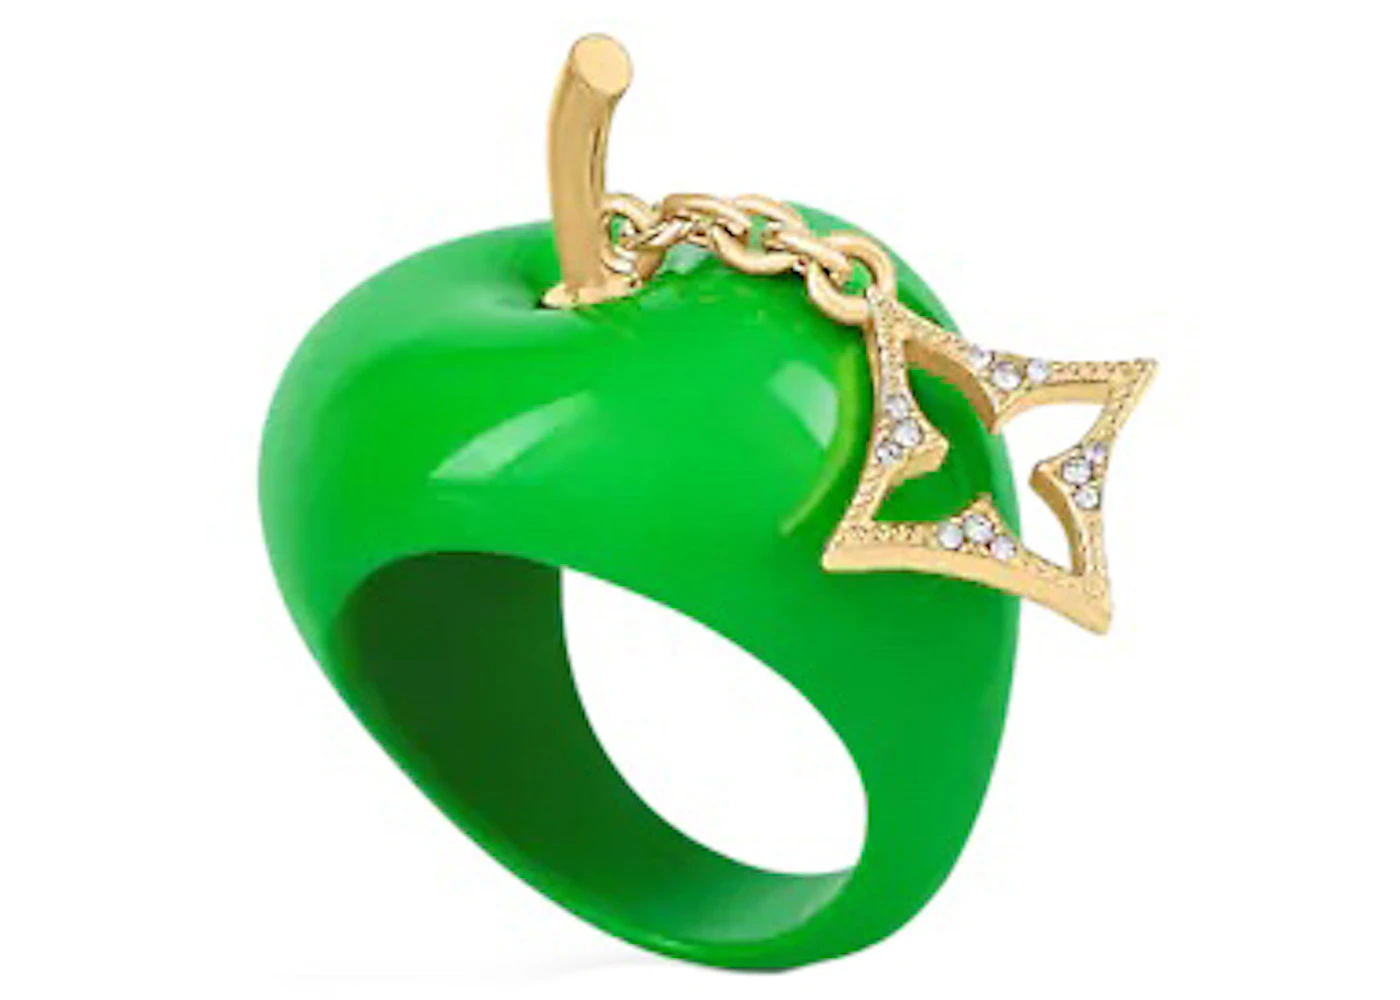 Louis Vuitton LV Fruits Apple Ring Medium Green in Enamel/Metal - US